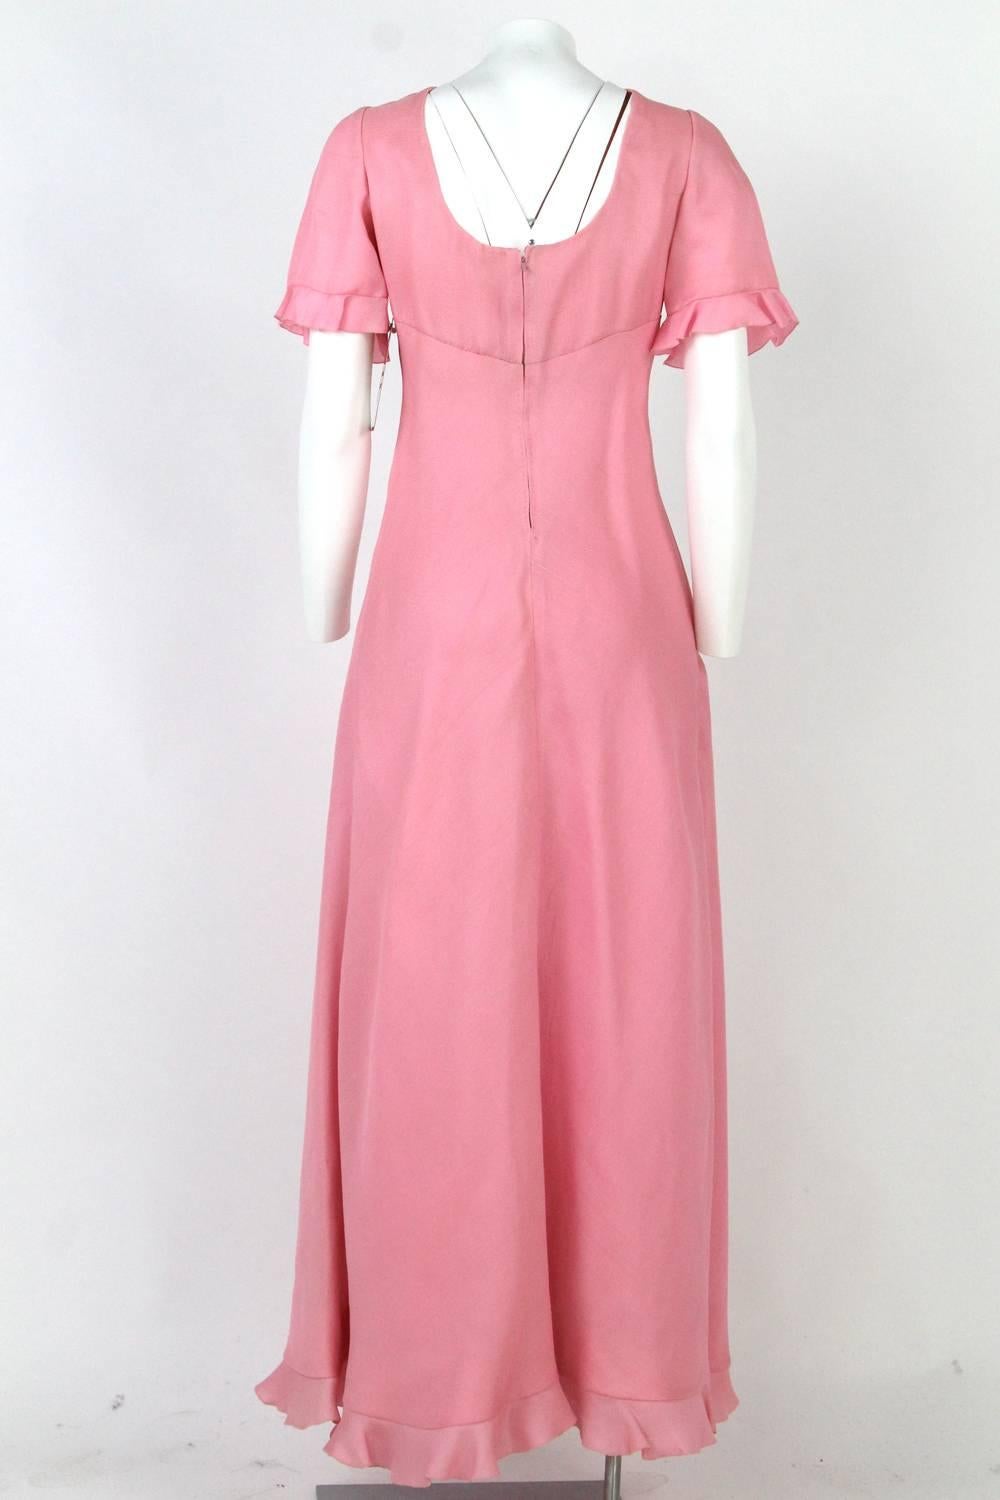 Women's 1970s Stop Senes Pink Dress Suit